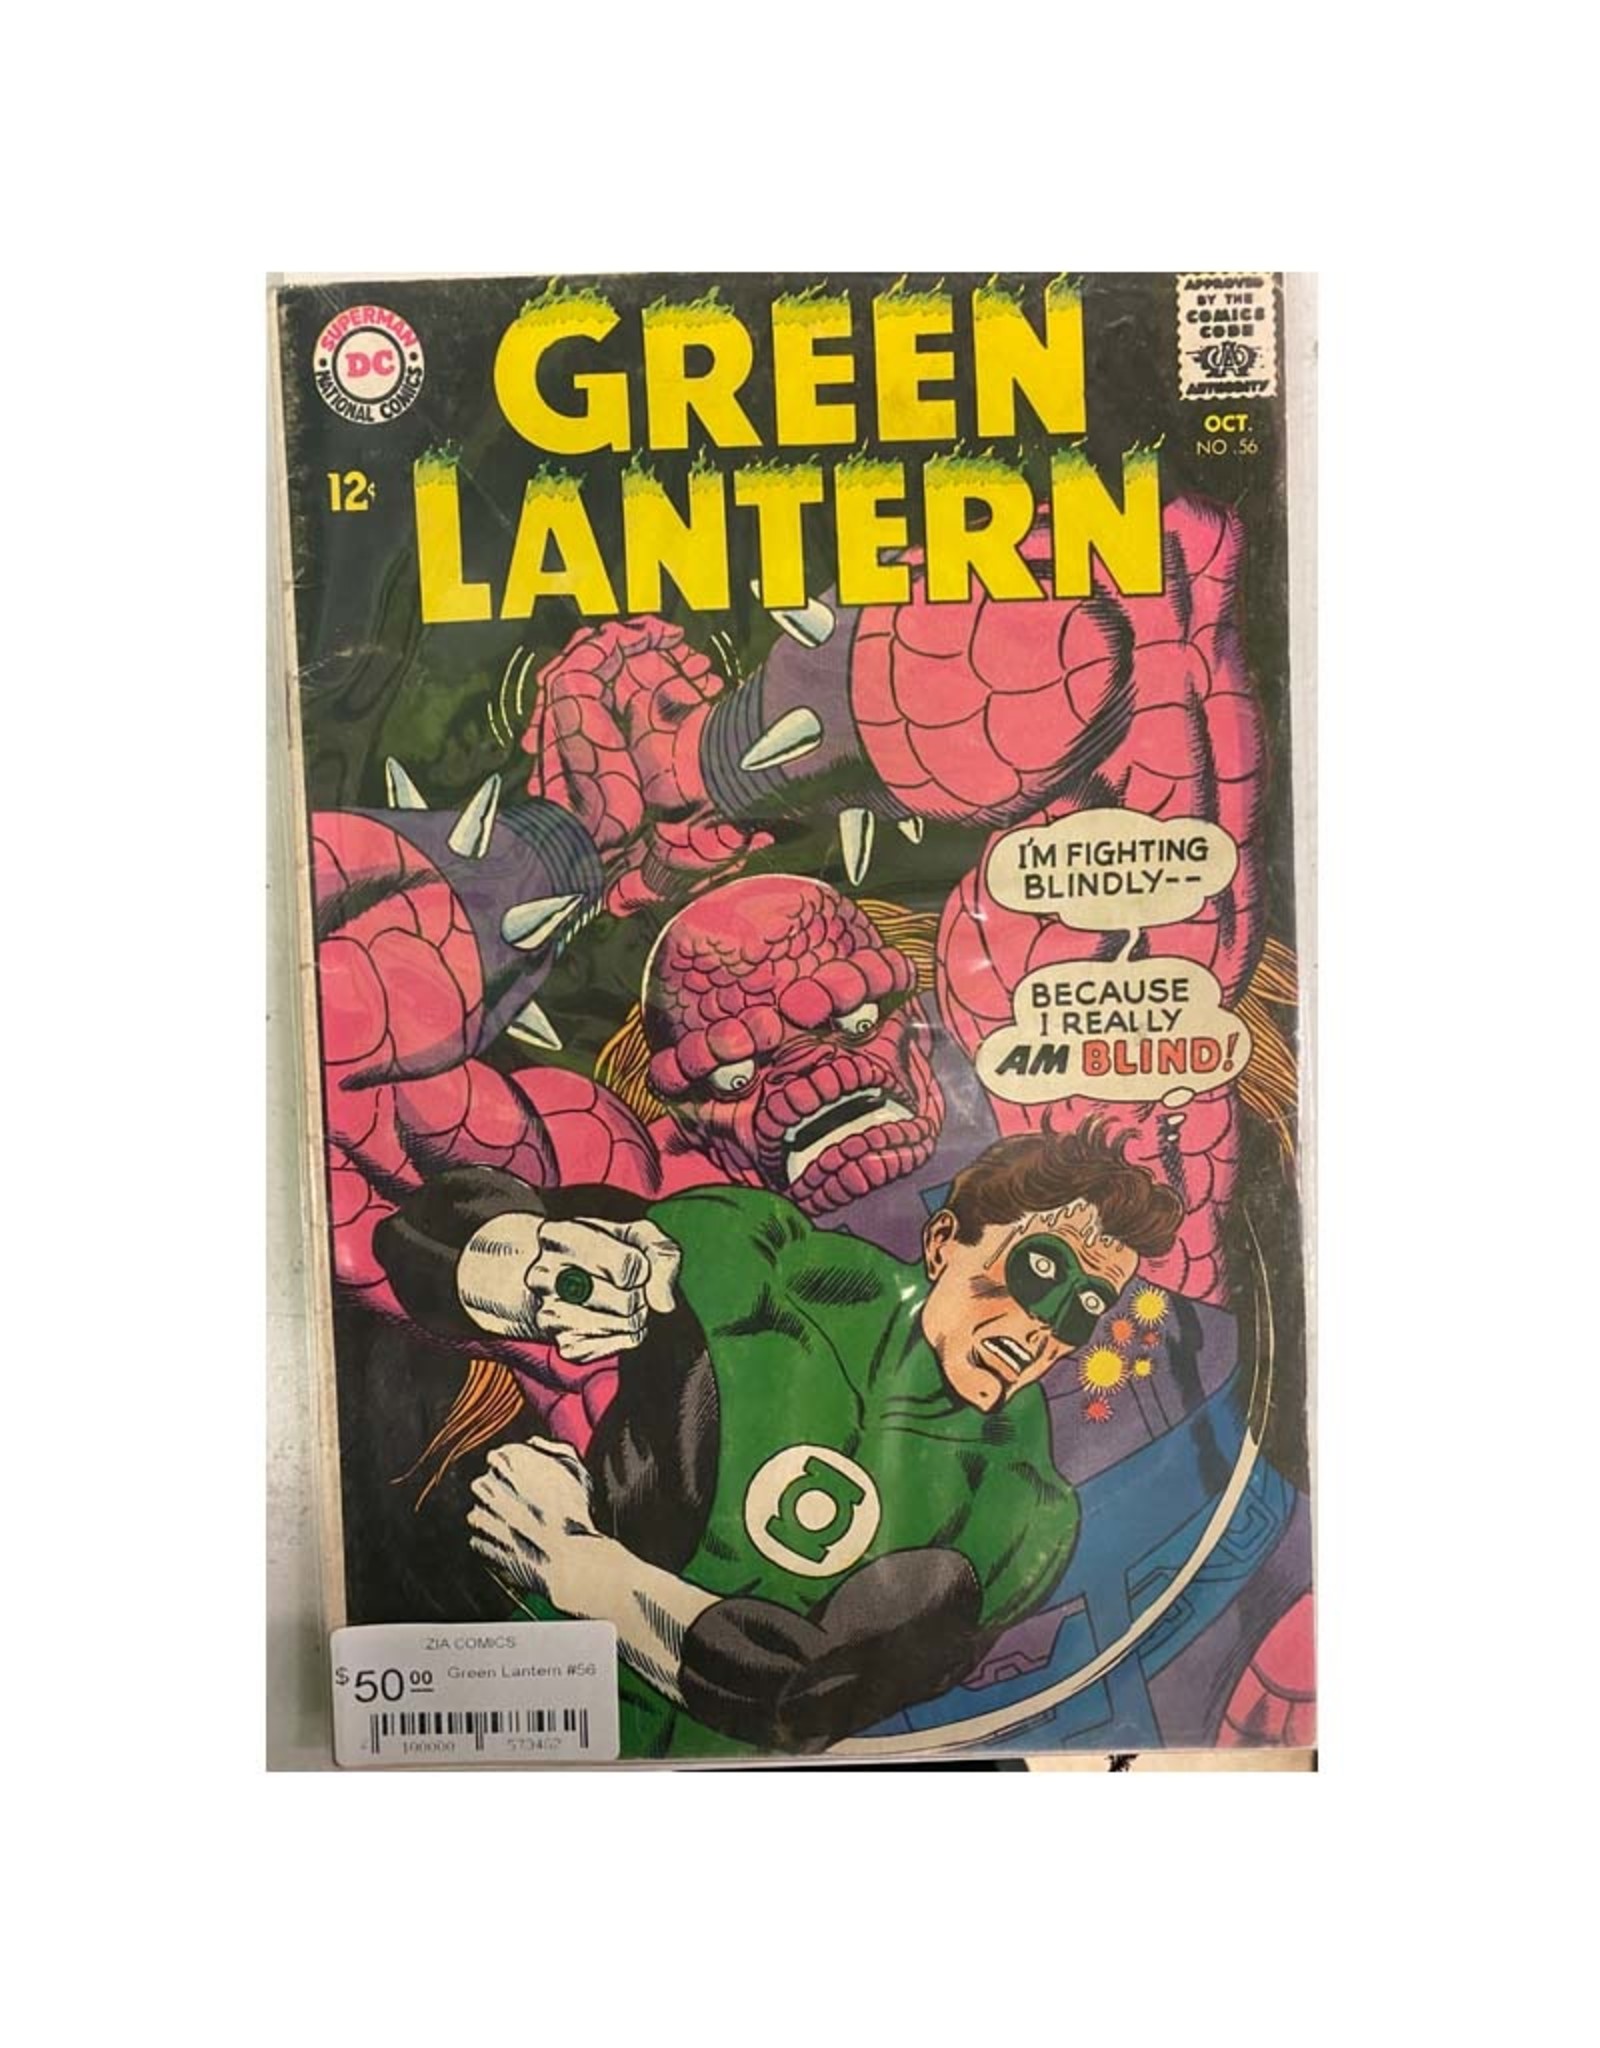 DC Comics Green Lantern #56